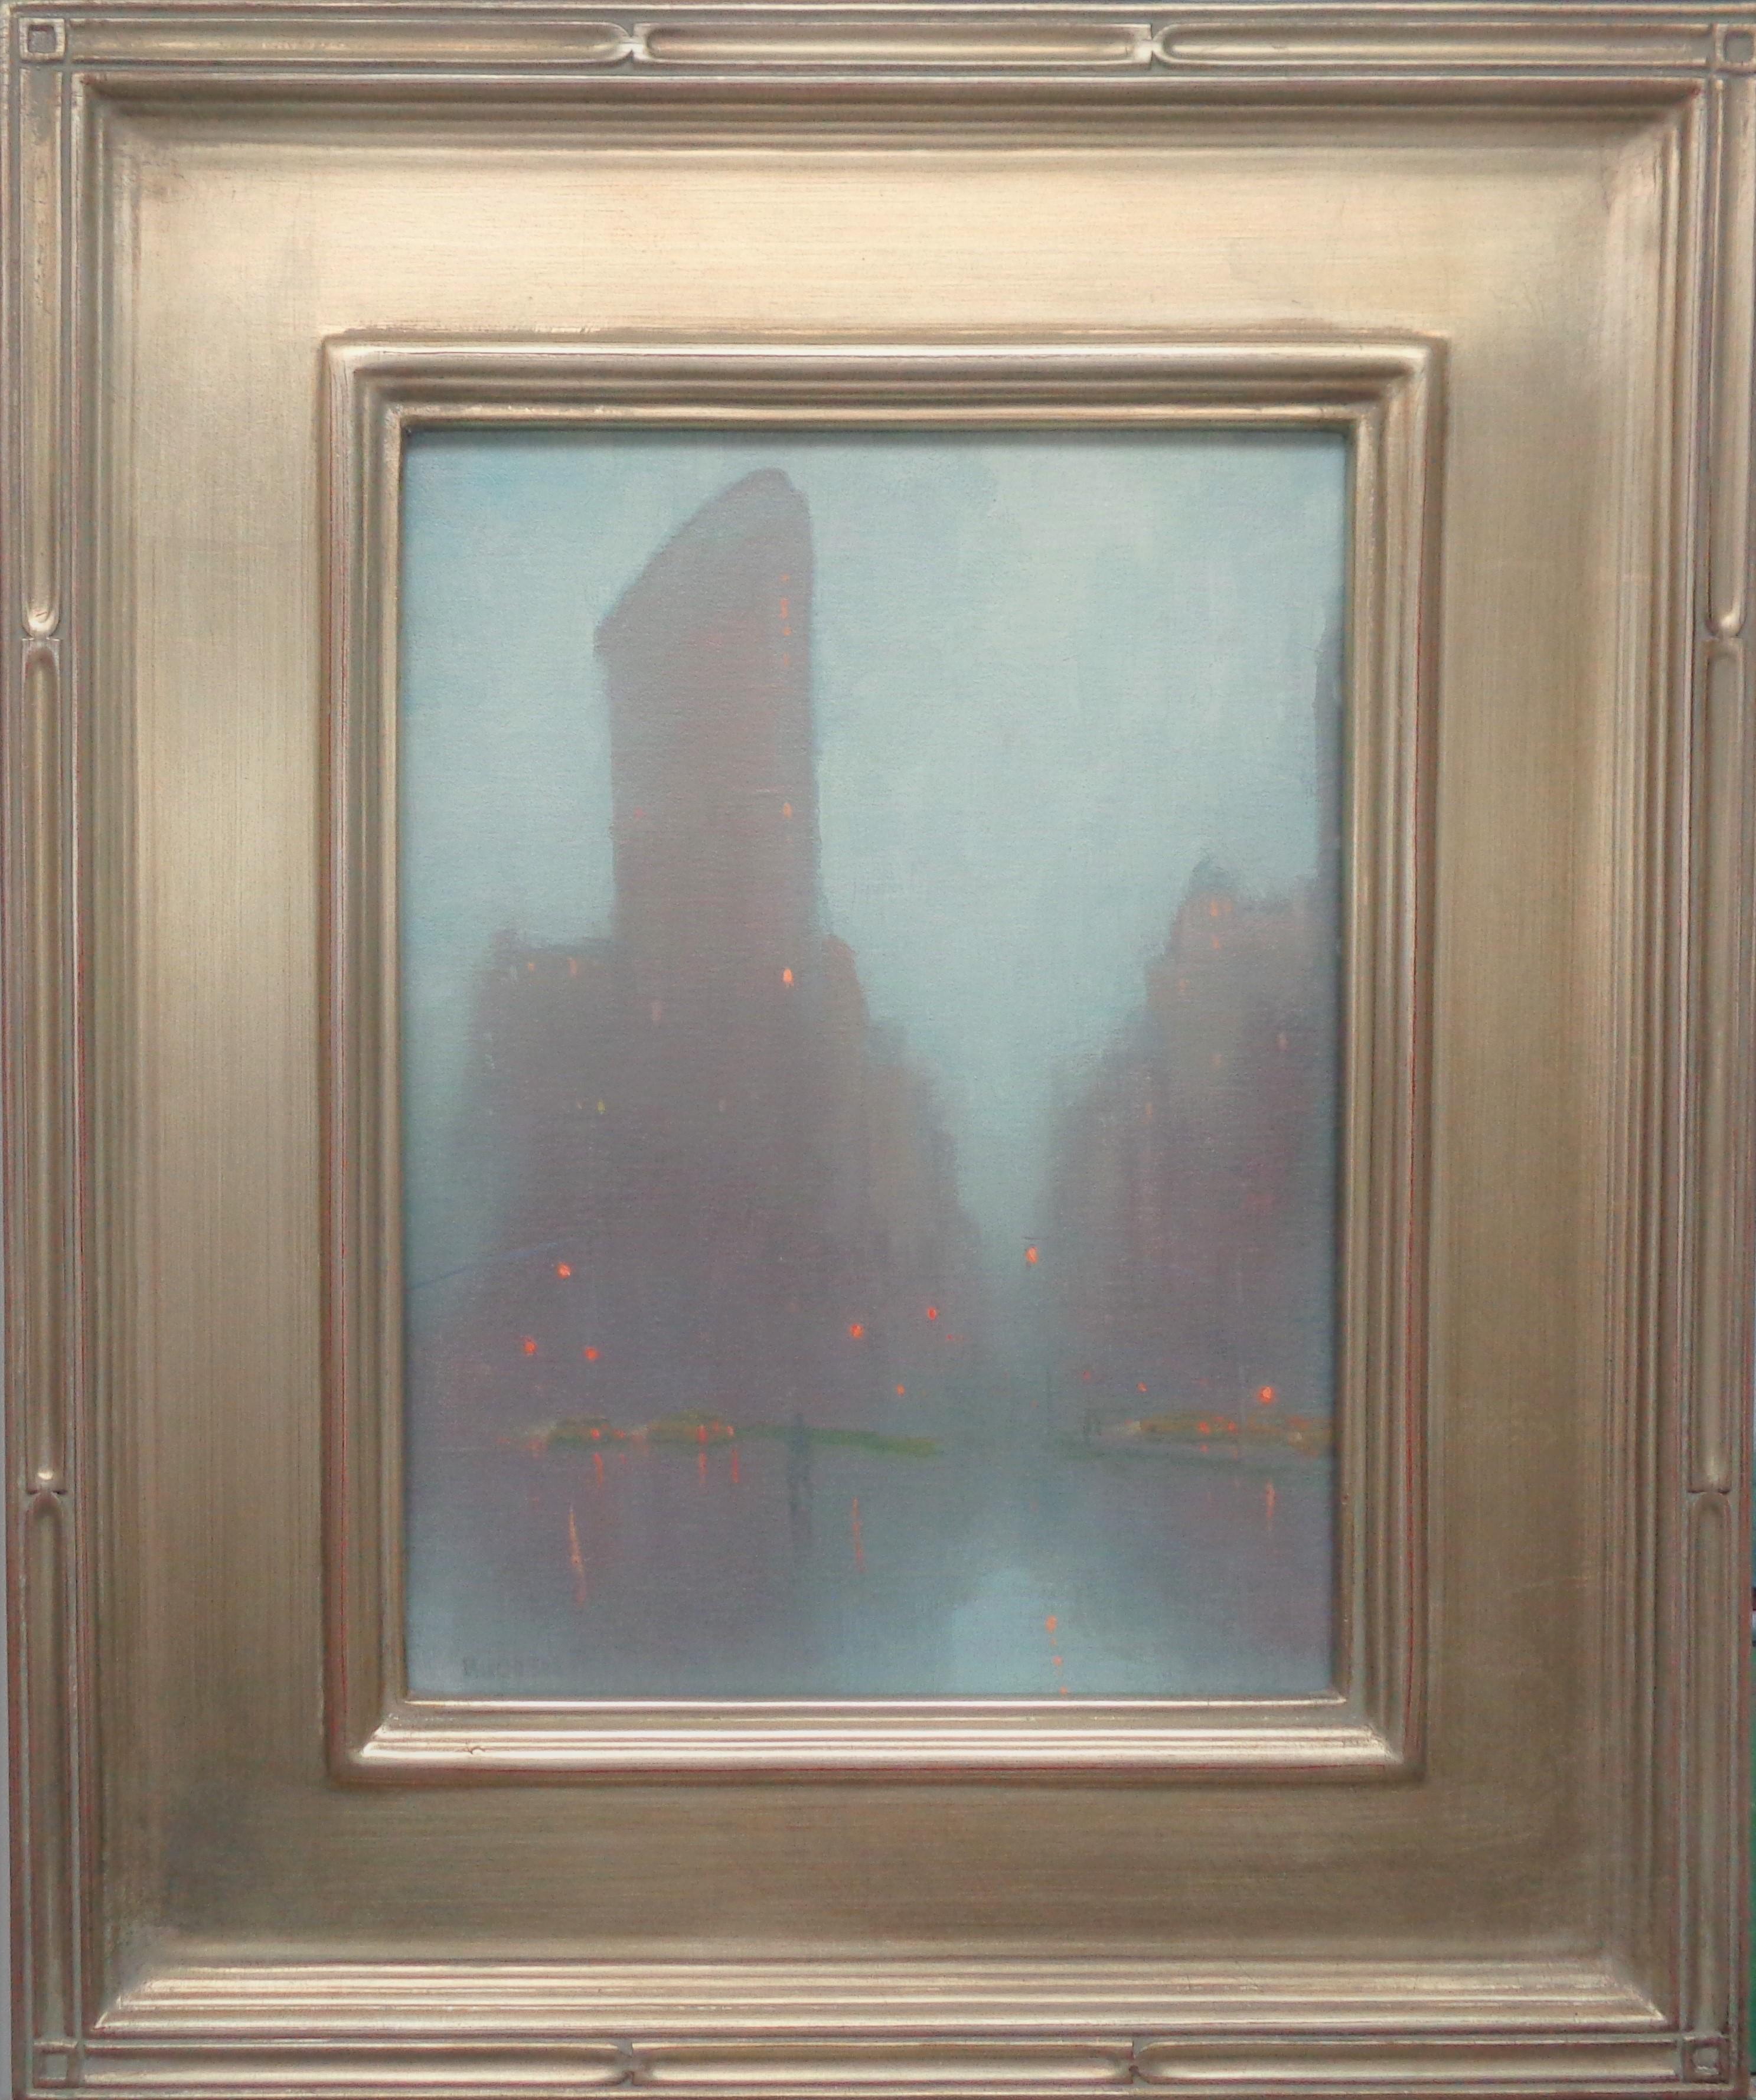 Regentag Nebel, Flatiron-Gebäude
Öl/Platte  12 x 9 ungerahmt, 18,5 x 15,5 gerahmt

Rainy Day Fog, Flatiron ist ein Ölgemälde auf Leinwand des preisgekrönten zeitgenössischen Künstlers Michael Budden, das ein wunderschönes, stimmungsvolles,